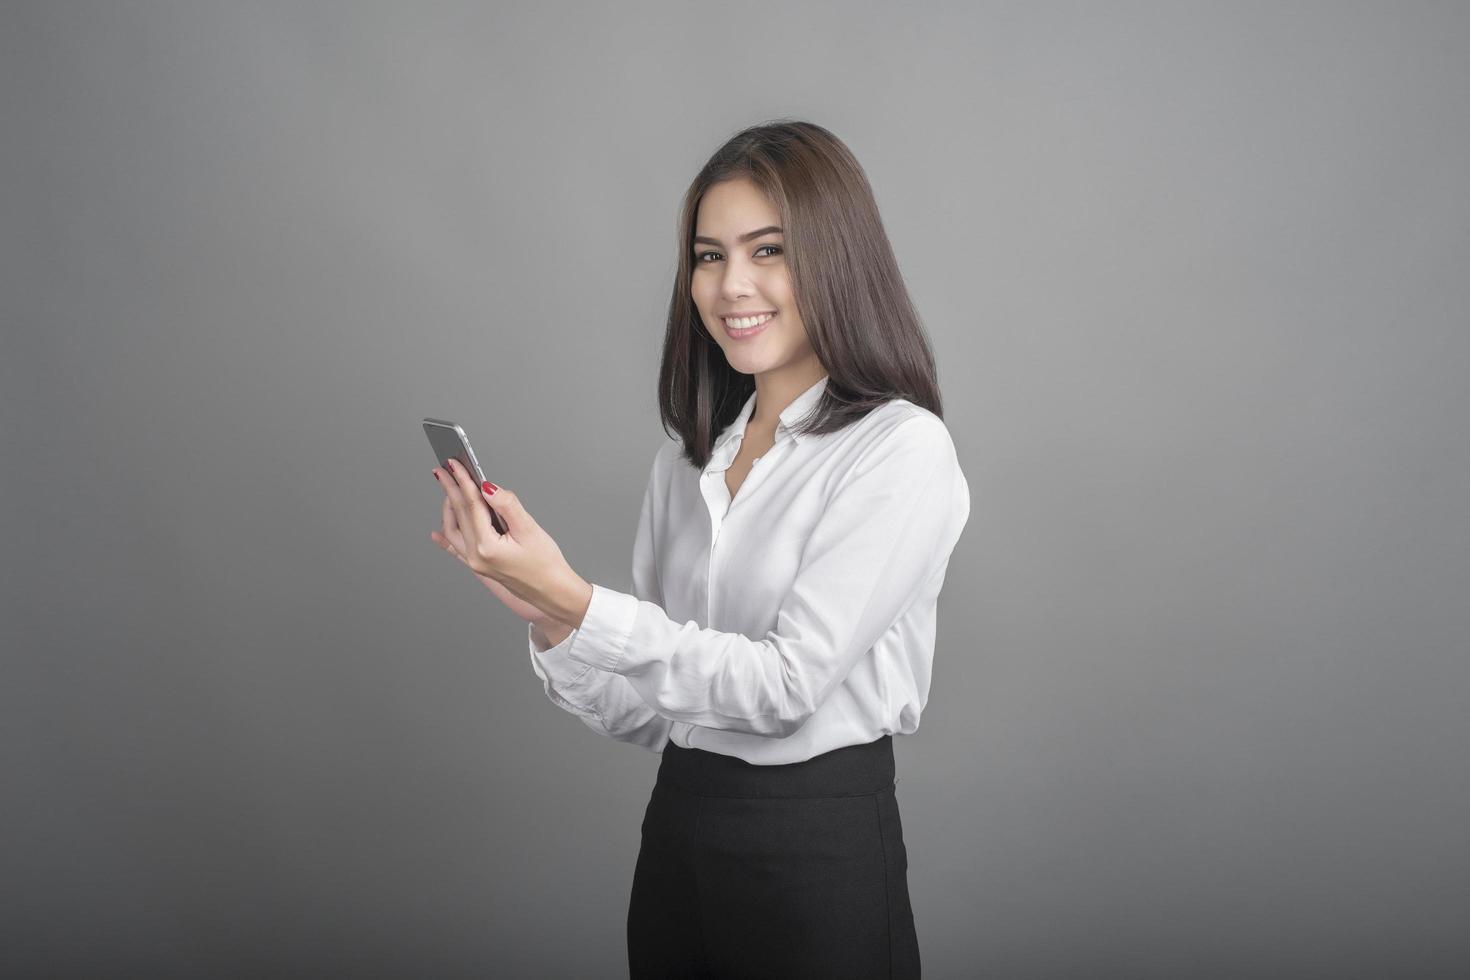 bella donna d'affari che utilizza smartphone su sfondo grigio foto